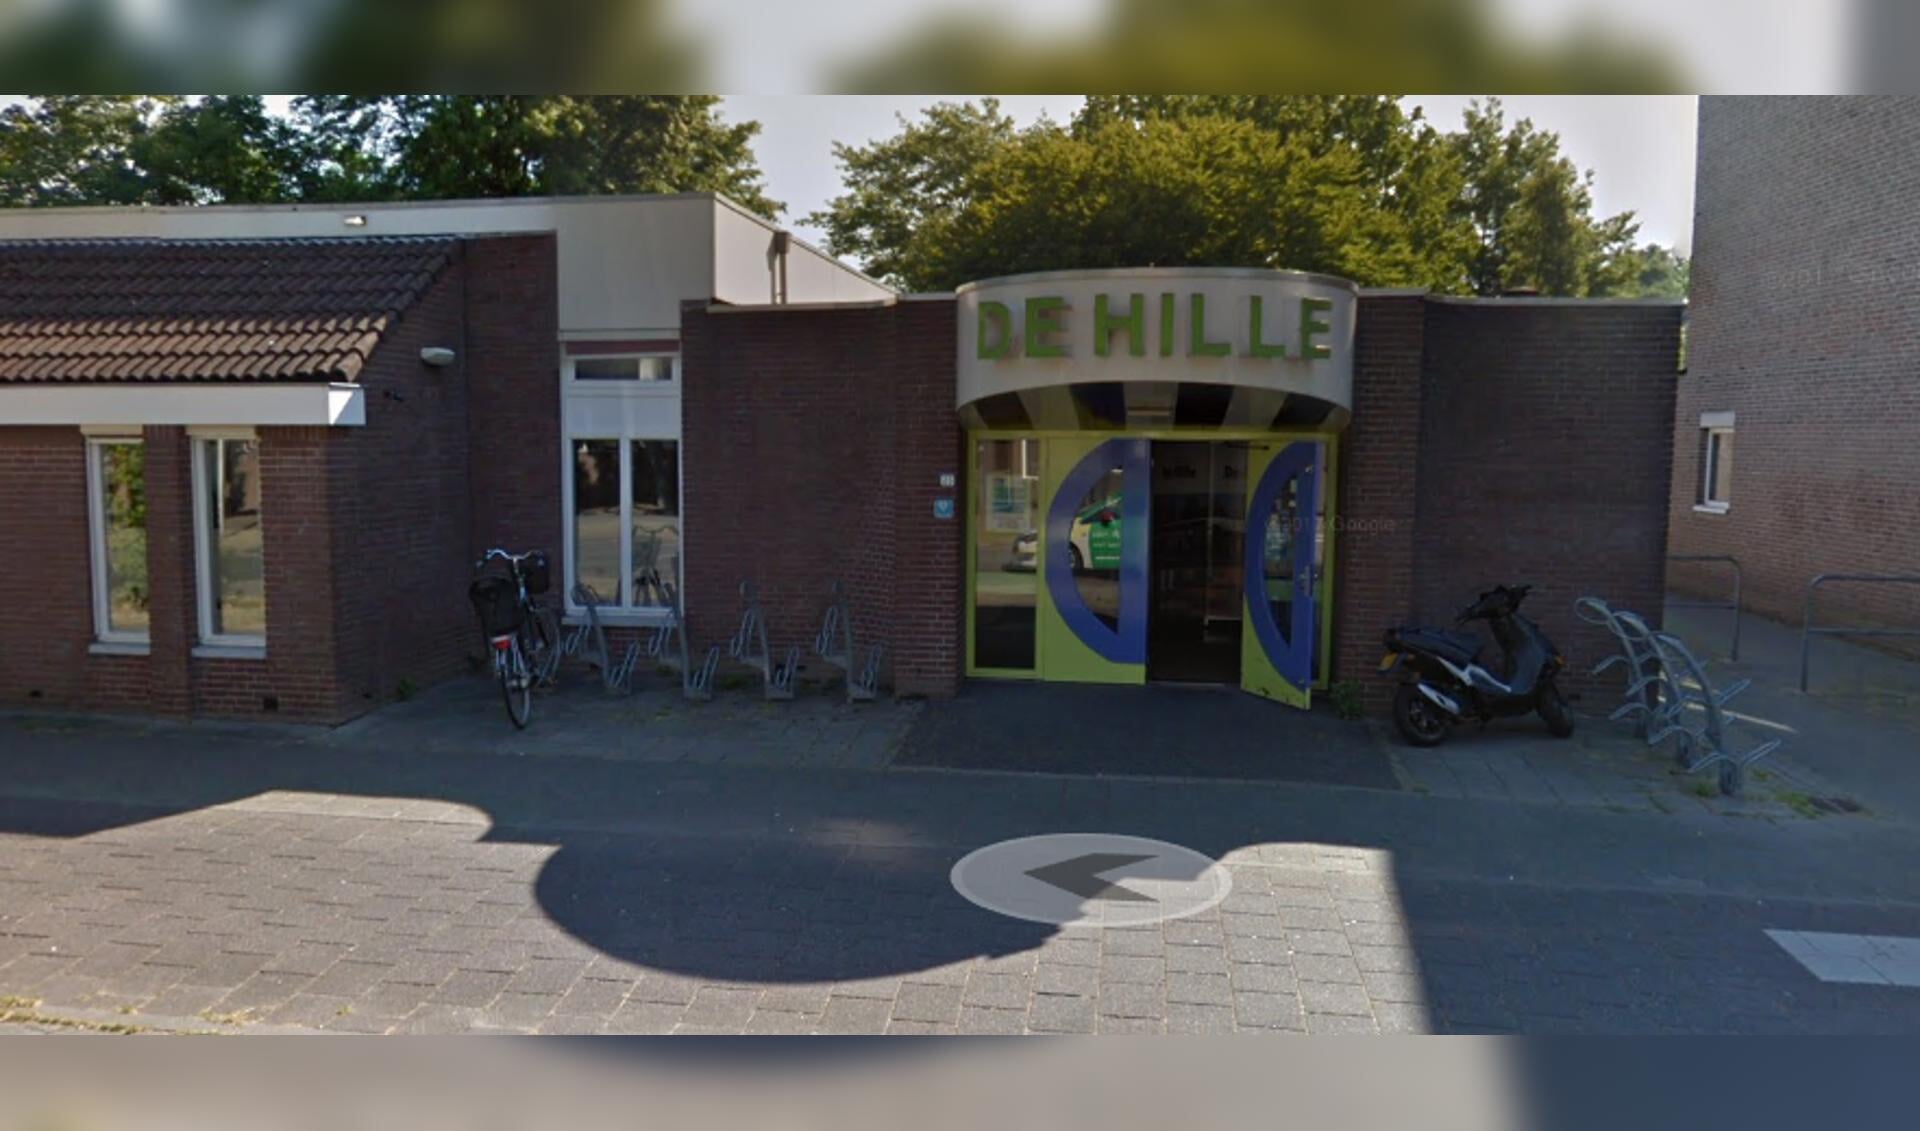 Wijkcentrum De Hille. (Foto: Google Maps)